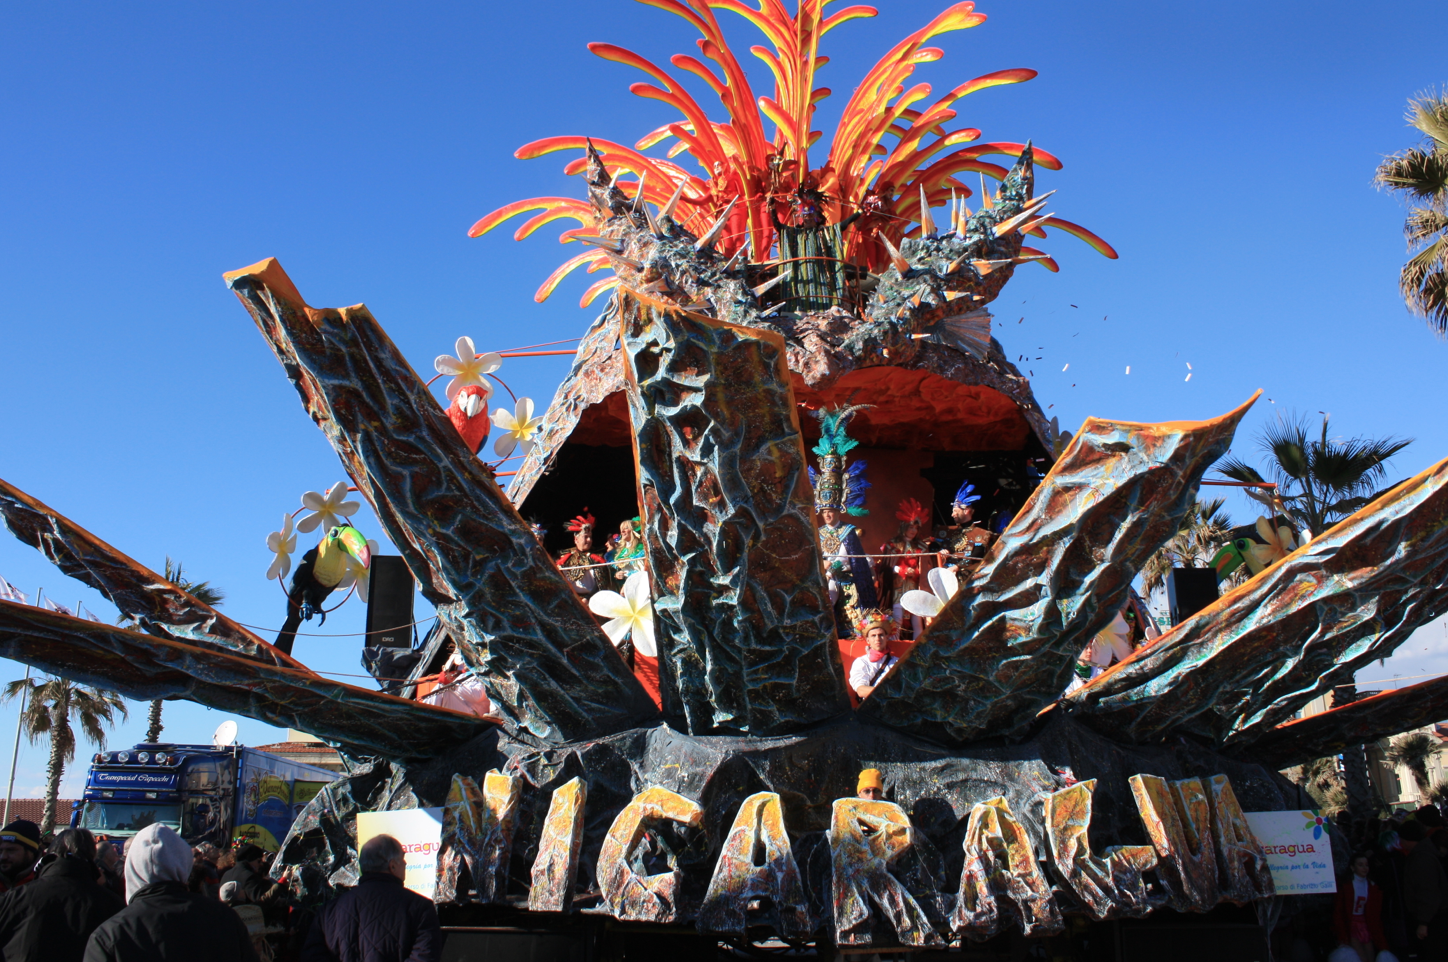 Carnevale di Viareggio, non c’è traccia del bilancio preventivo 2014 sul sito della Fondazione